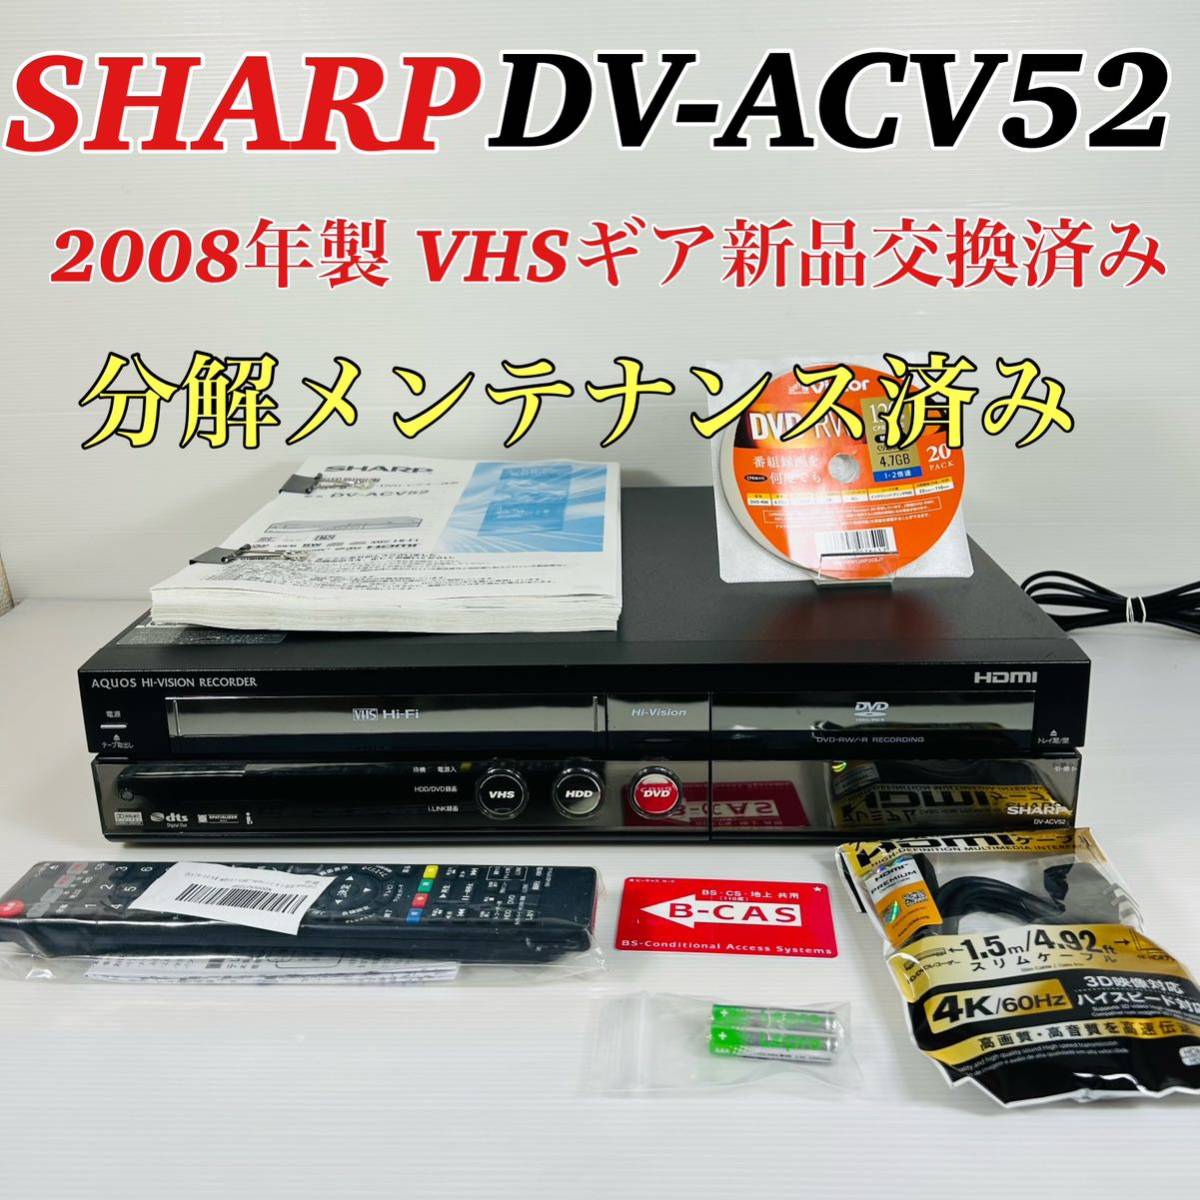 【2008年製】SHARP AQUOS DV-ACV52 VHSギア新品交換済み 分解メンテナンス済み リモコン付属品セット 送料無料　②